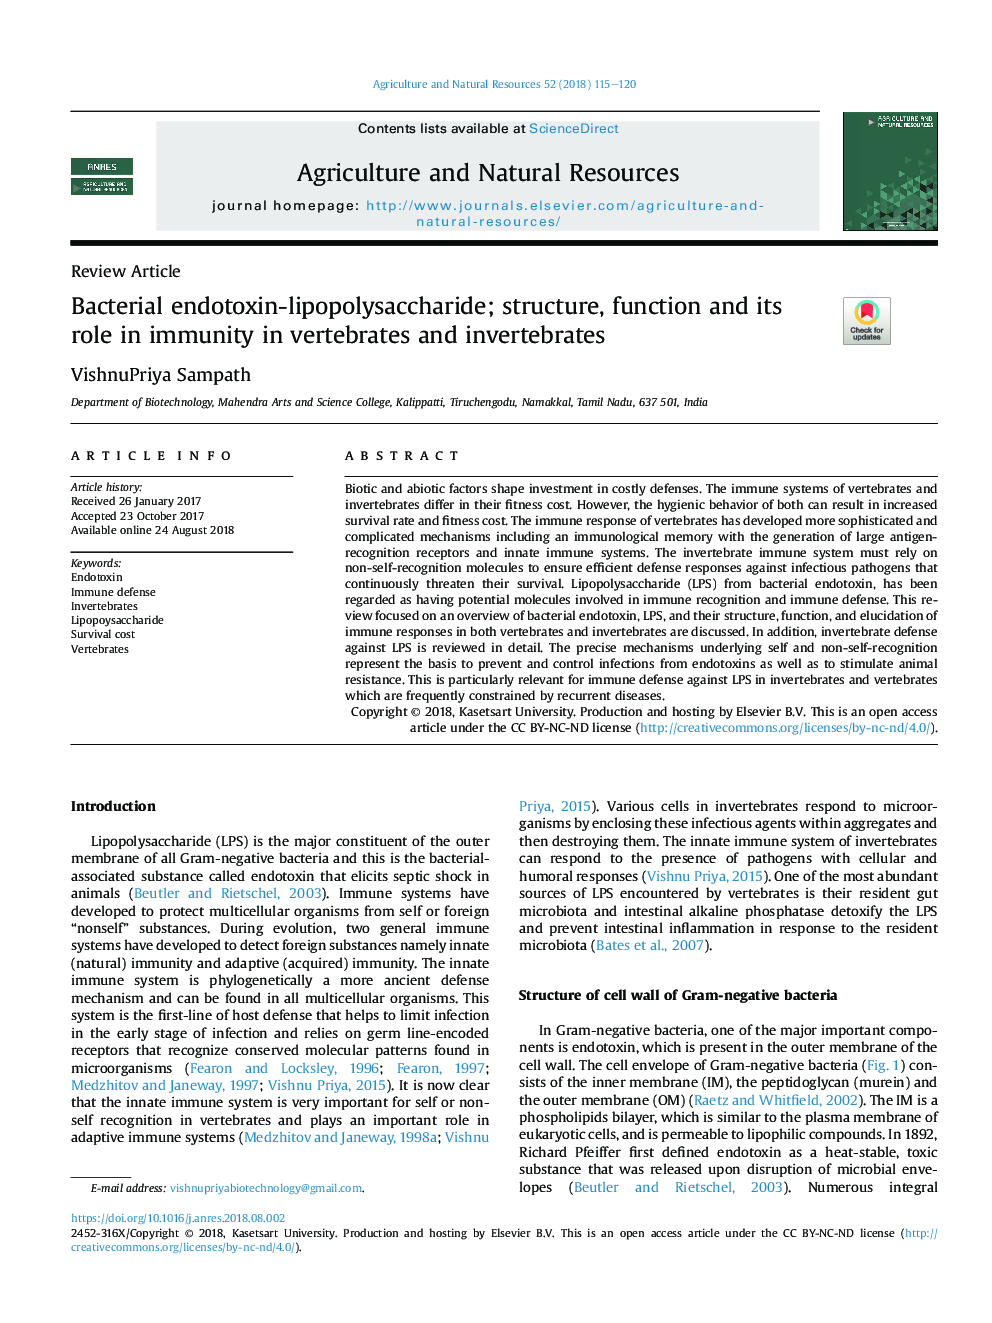 اندوتوکسین-لیپوپلی ساکارید باکتریایی؛ ساختار، عملکرد و نقش آن در ایمنی در مهره داران و بی مهرگان